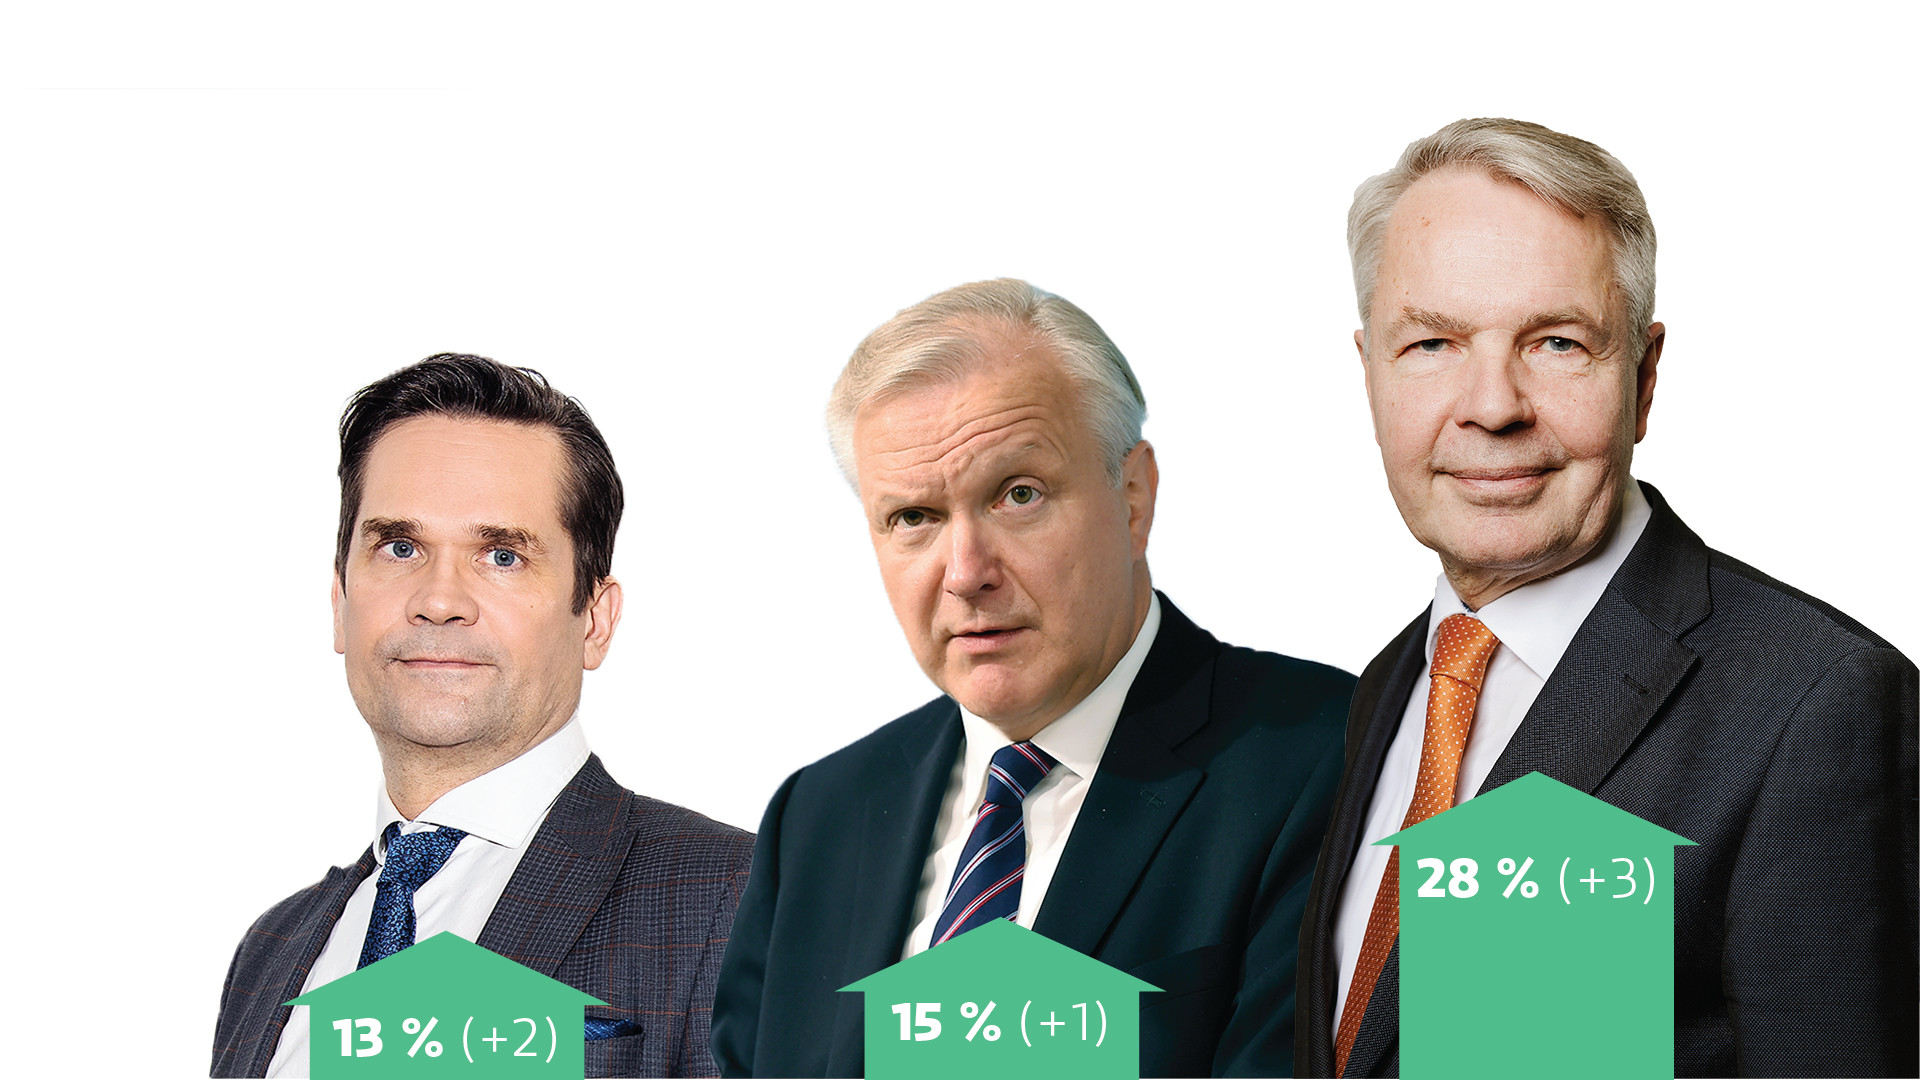 Pekka Haavisto tiene una sólida ventaja en las elecciones presidenciales más recientes de Yle